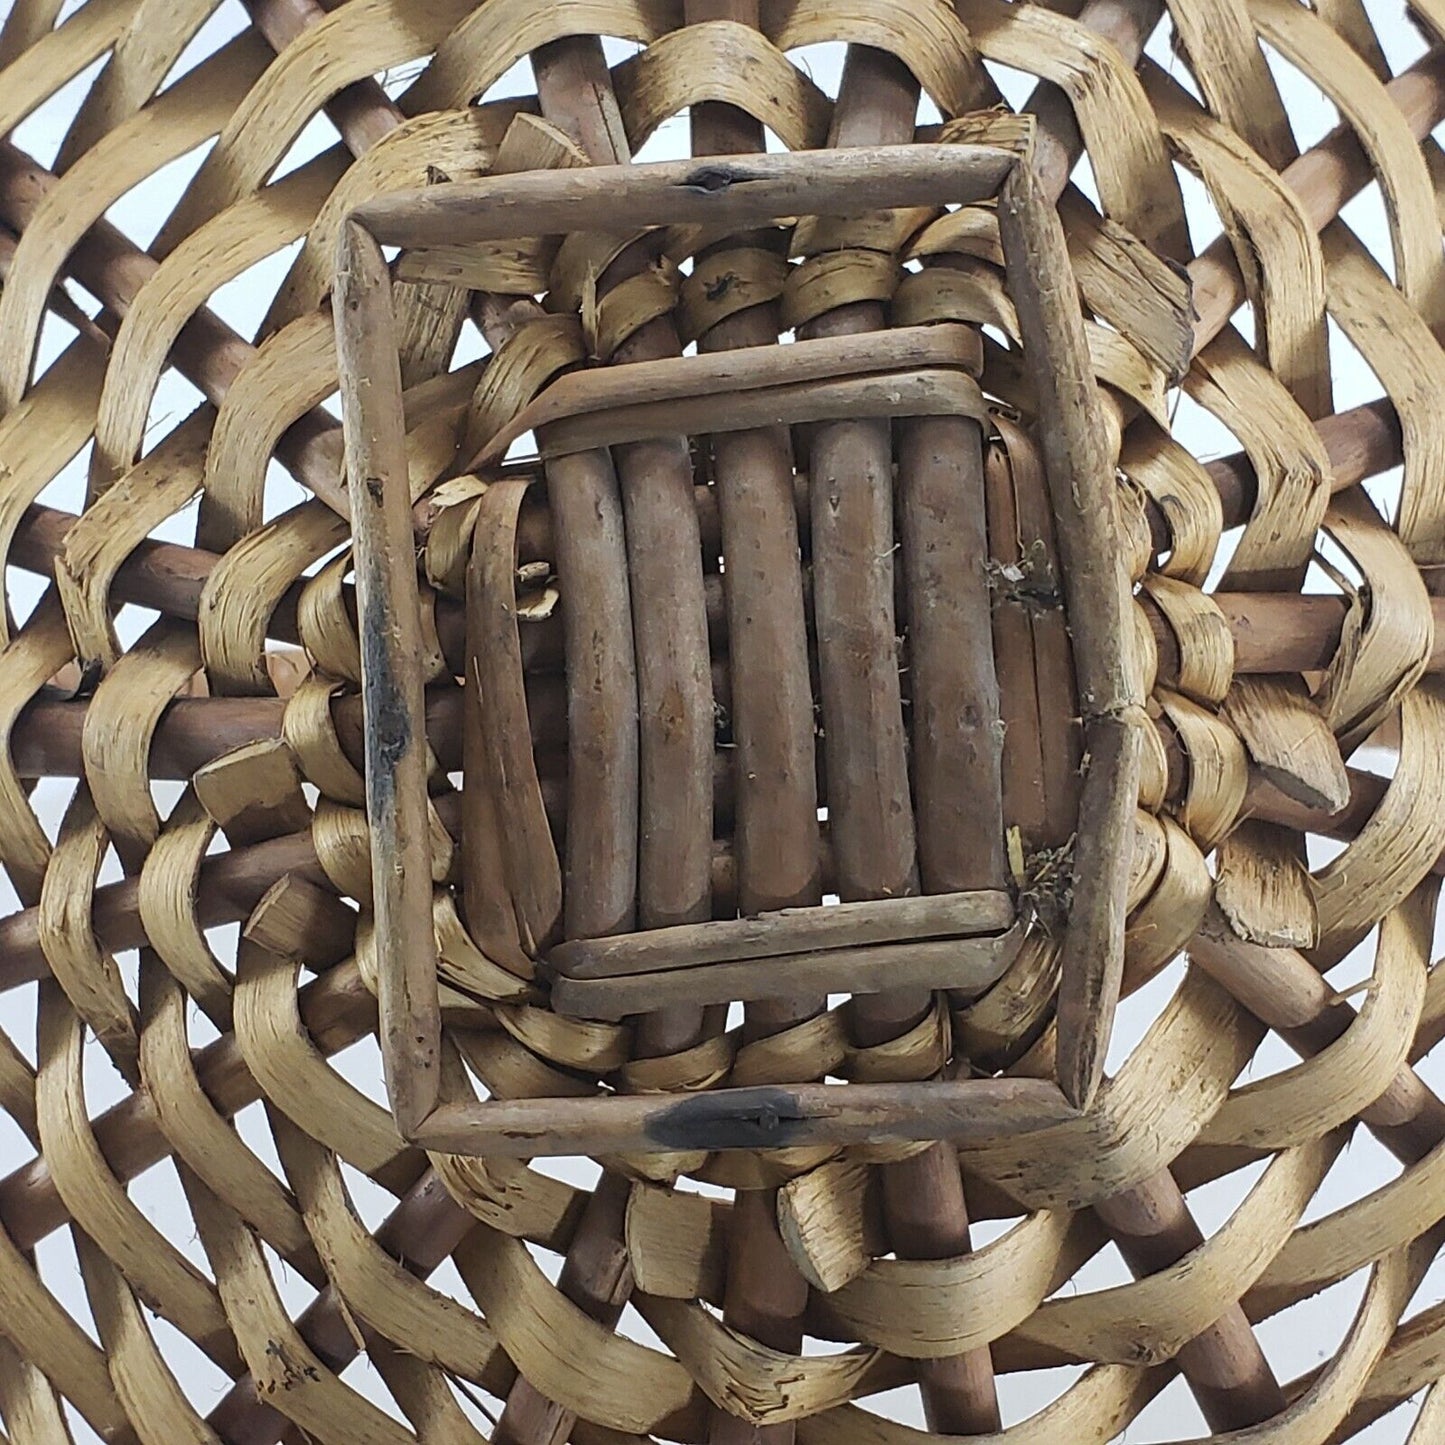 Gathering Wicker Basket Rattan Woven Weave Farmhouse Rustic Fireplace Hearth